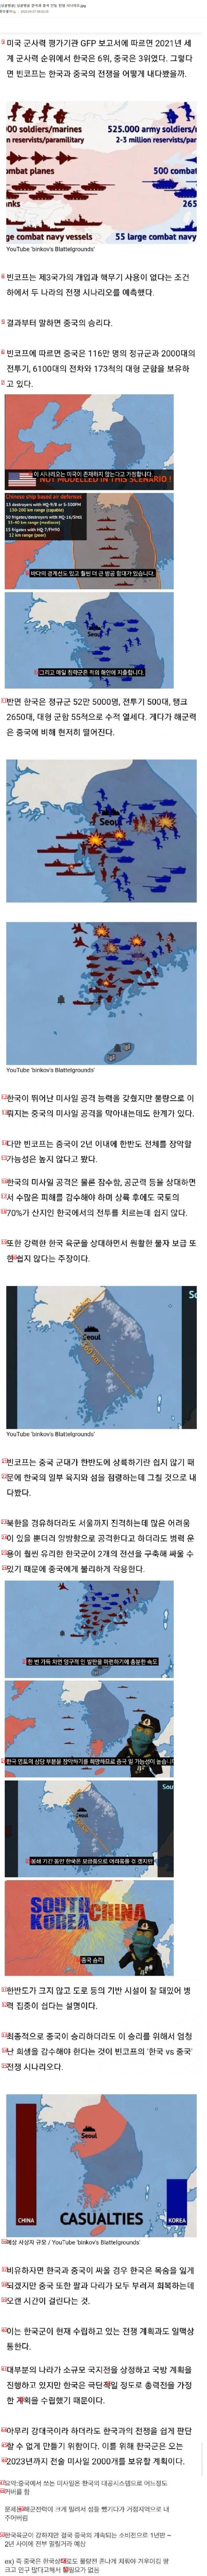 韓国と中国の単一戦争シナリオjpg